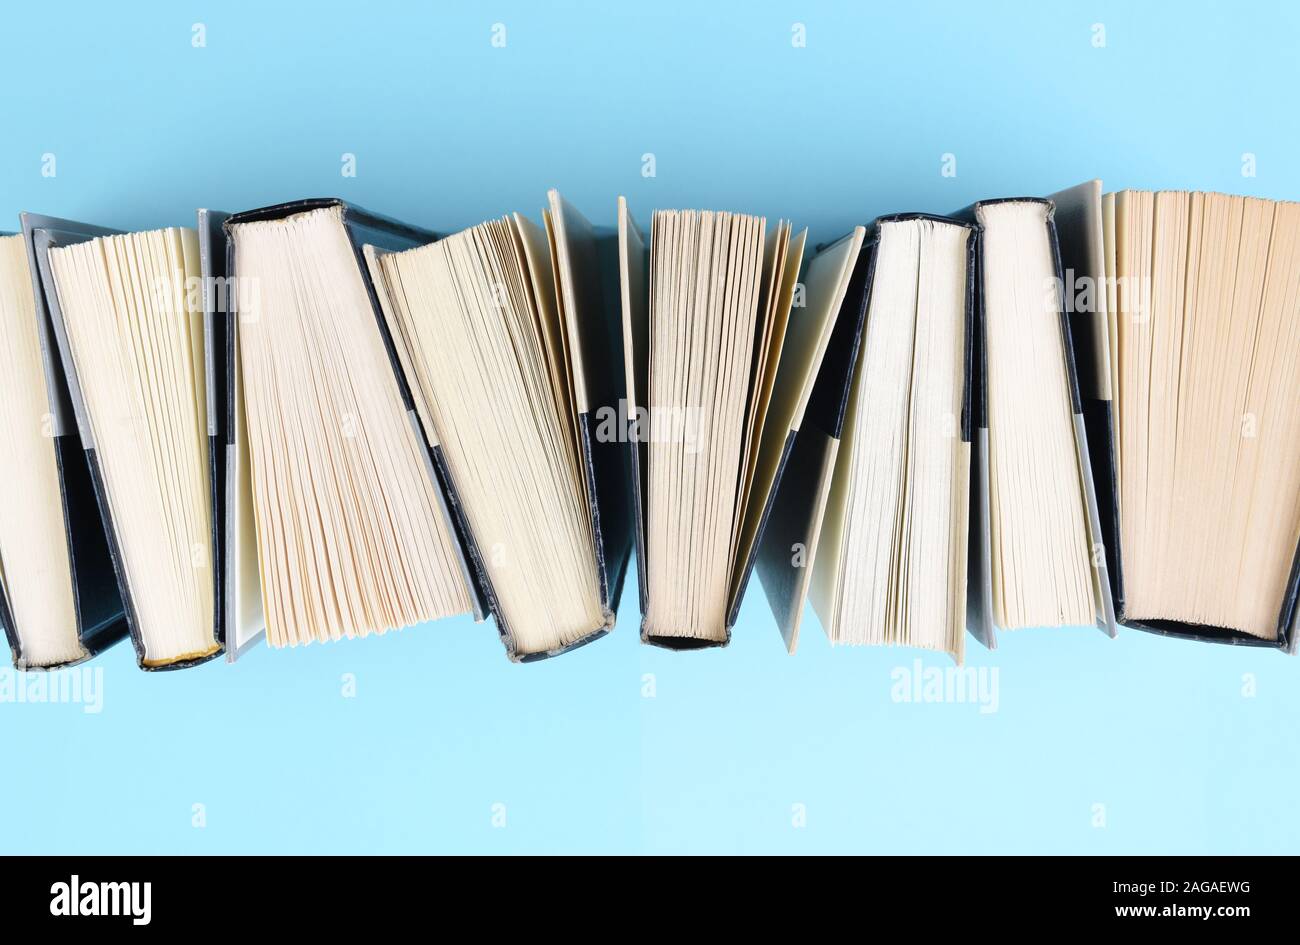 Hohen winkel Bild aus einer Reihe von Bücher stehen auf Ende auf einem hellblauen Hintergrund. Stockfoto